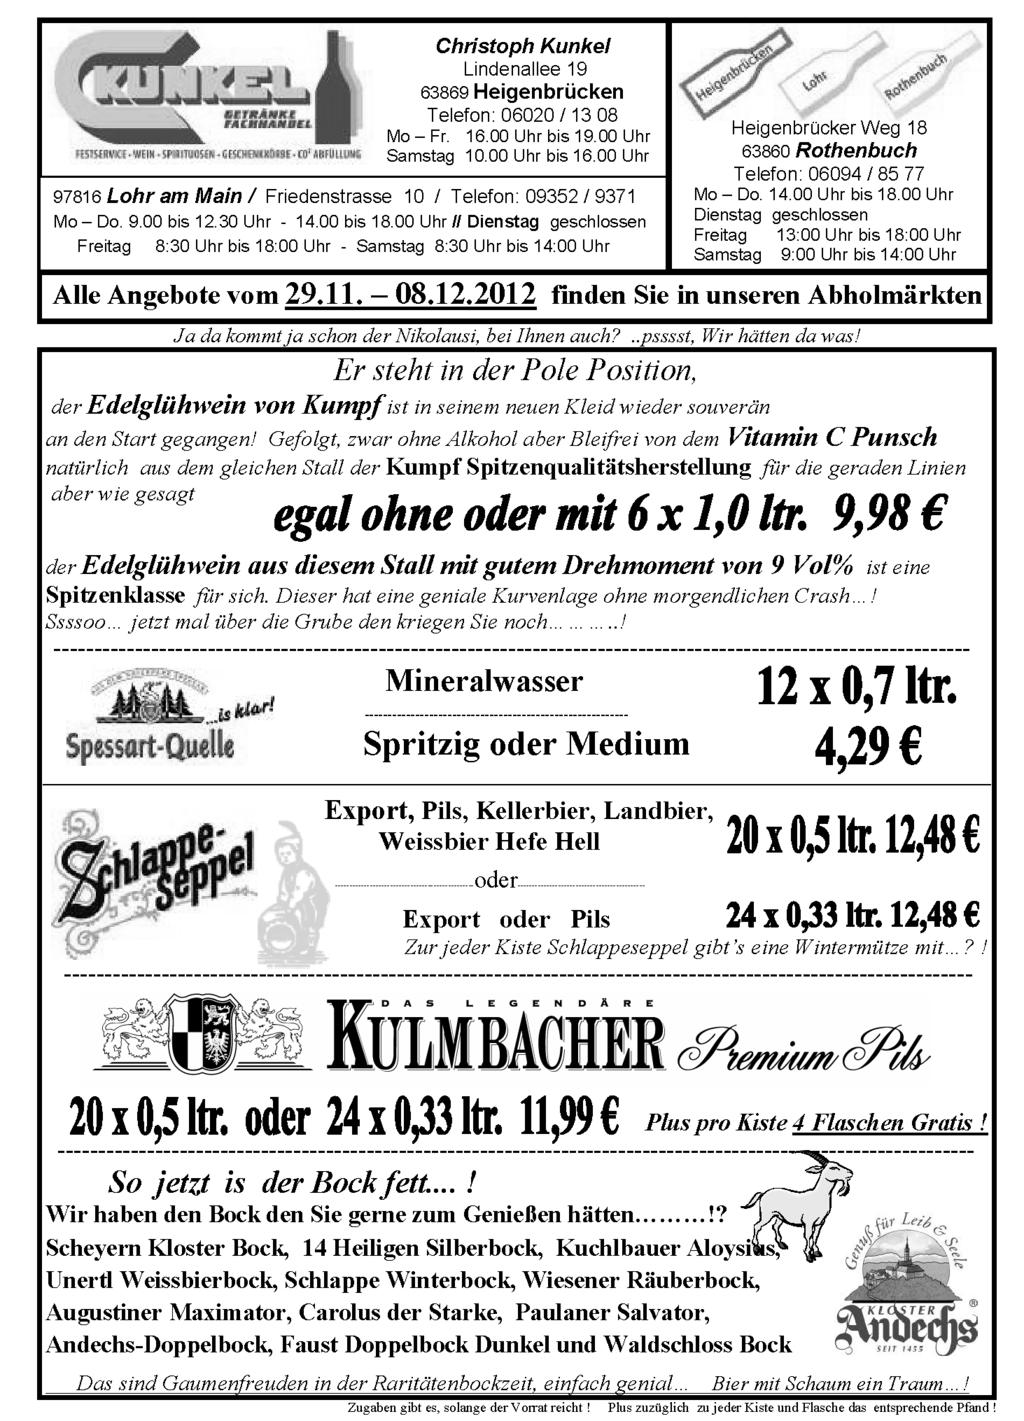 Impressum: Verantwortlich: Verwaltungsgemeinschaft Partenstein, Hauptstraße 24, 97846 Partenstein